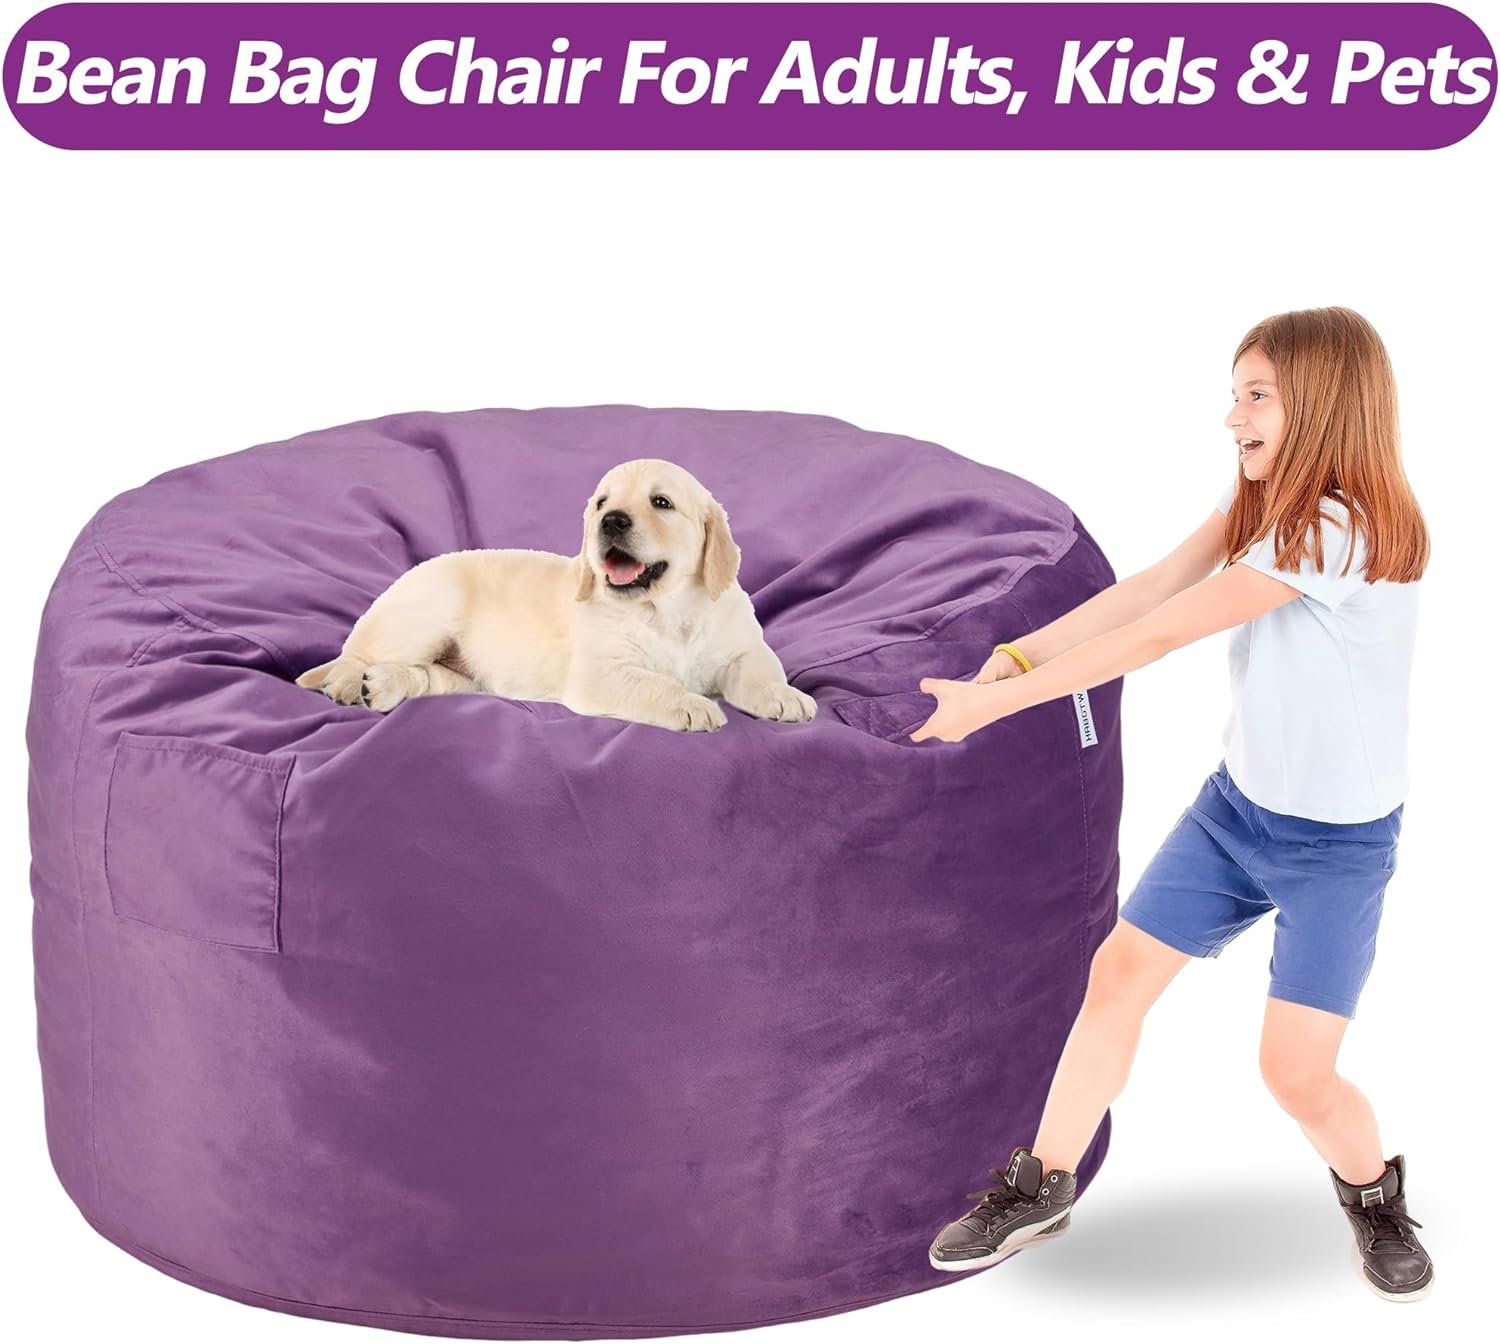 Memory Foam Filled Bean Bag Chair Review